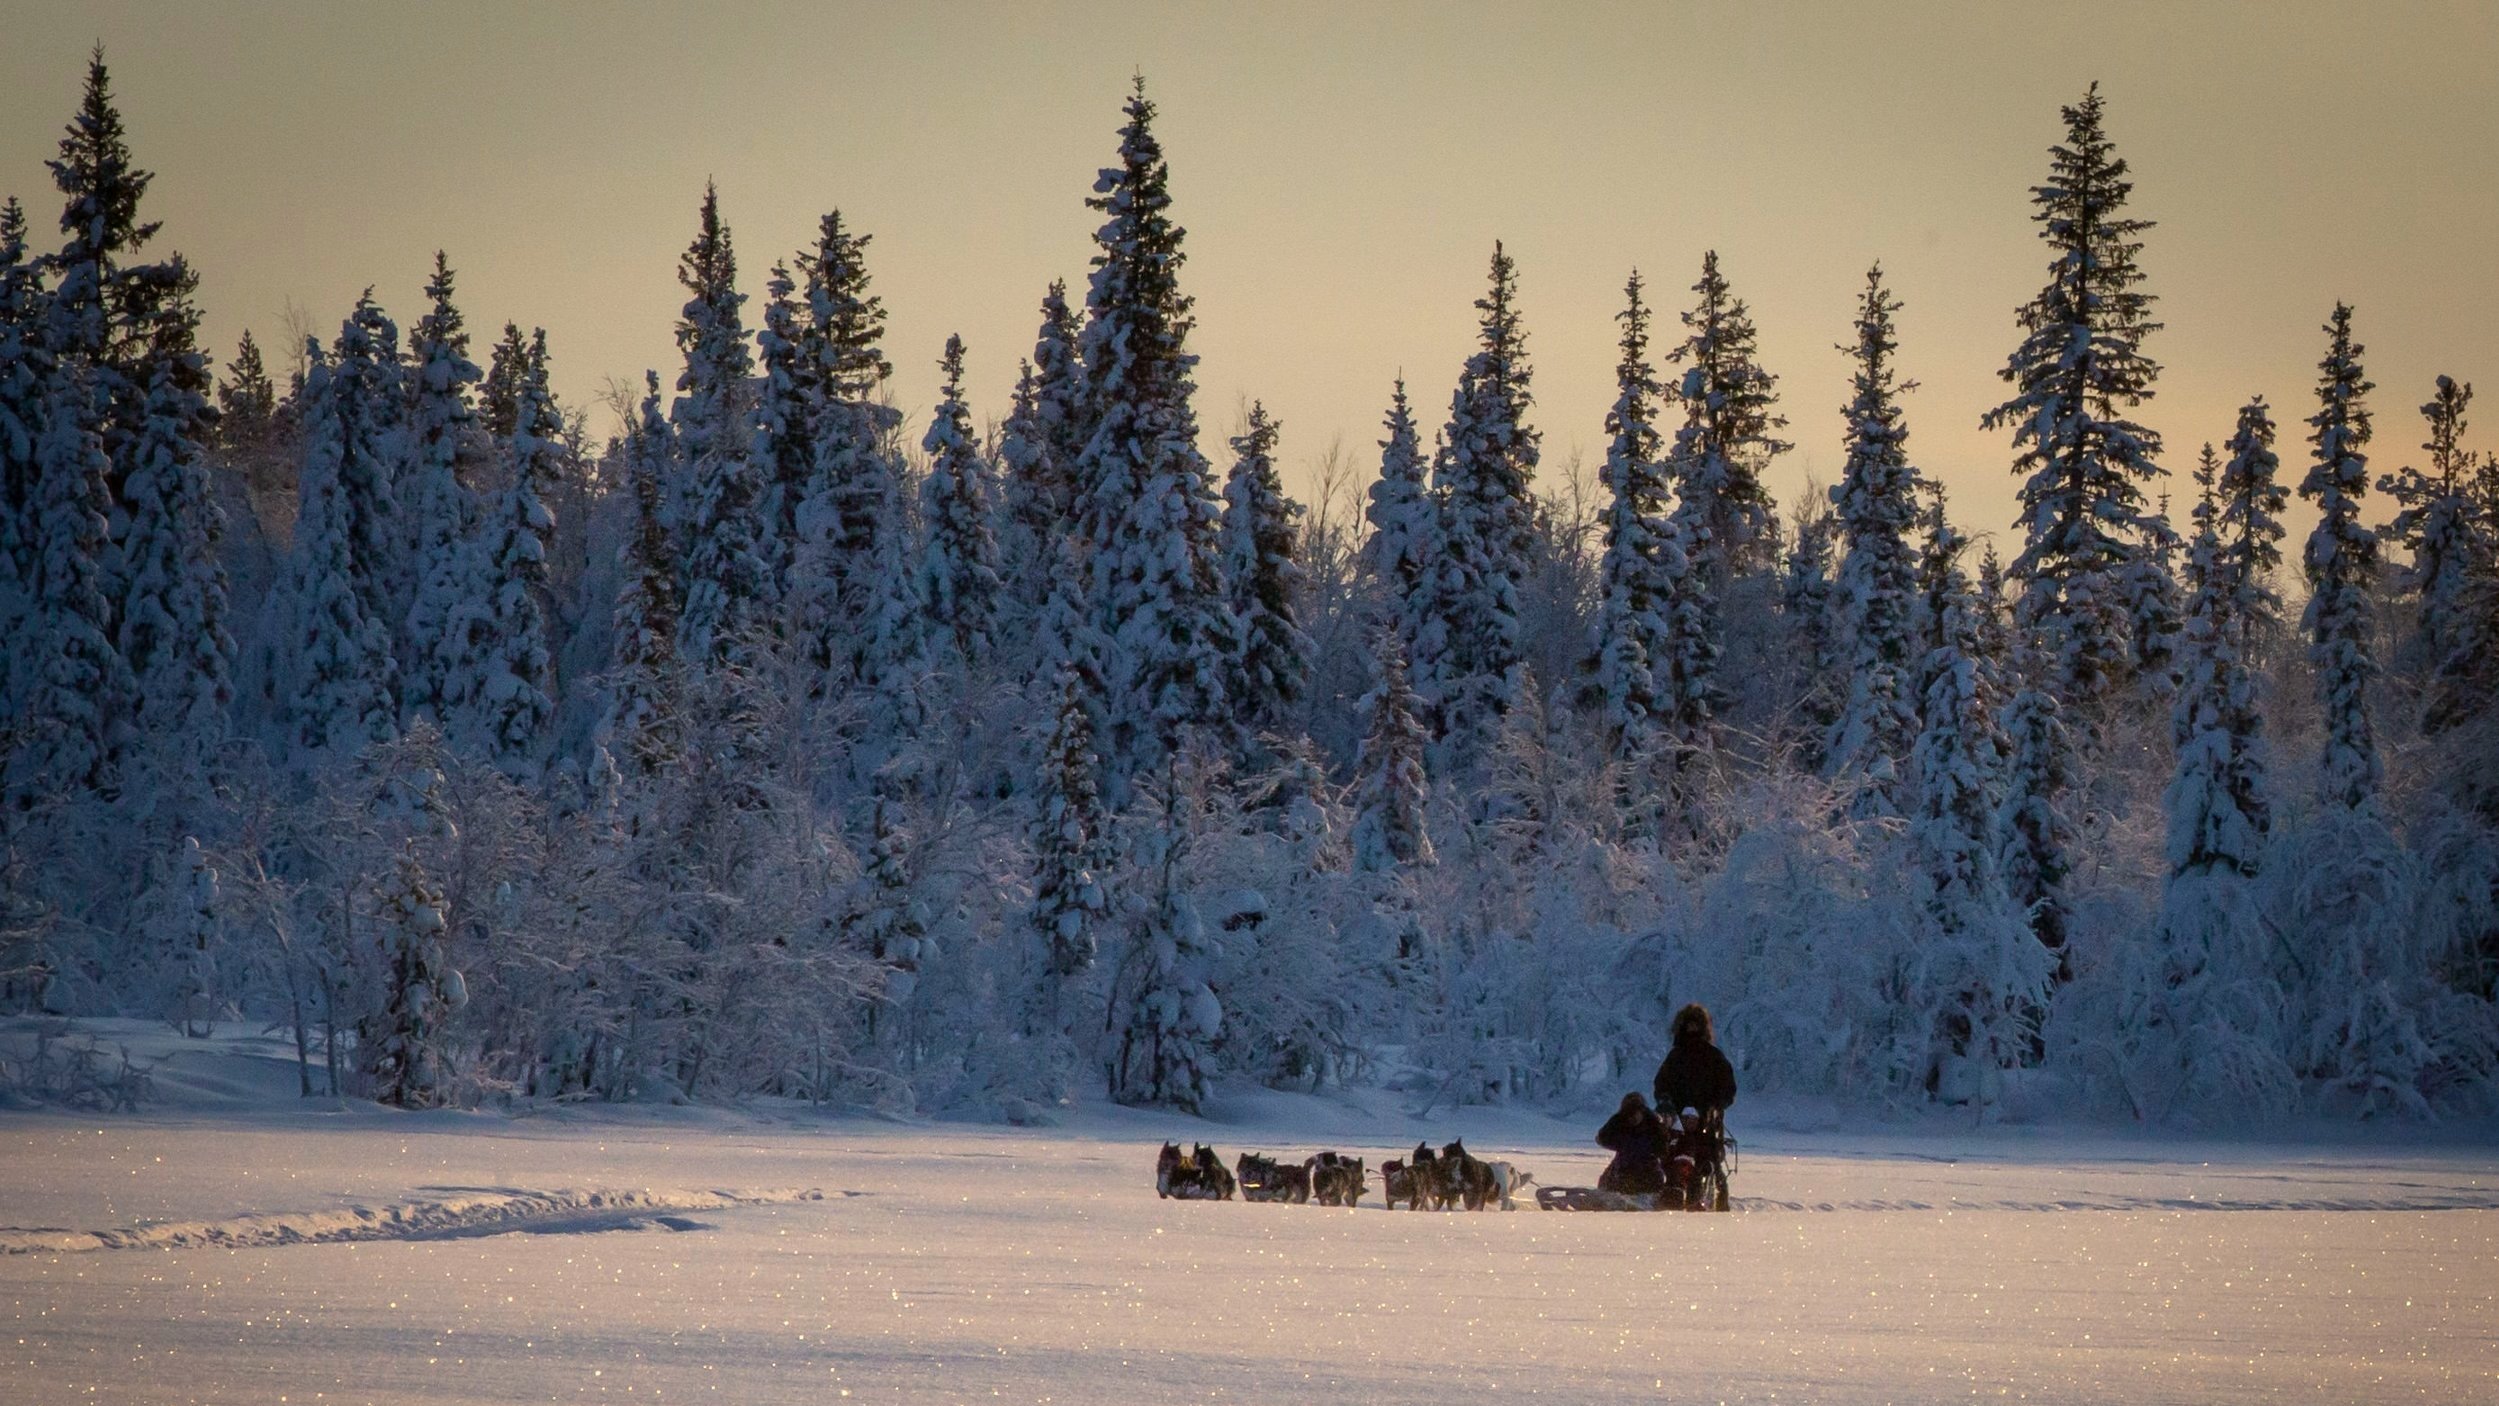 Sunset Husky Dog sledding tours with Snowdog - Kiruna (Swedish Lapland) 